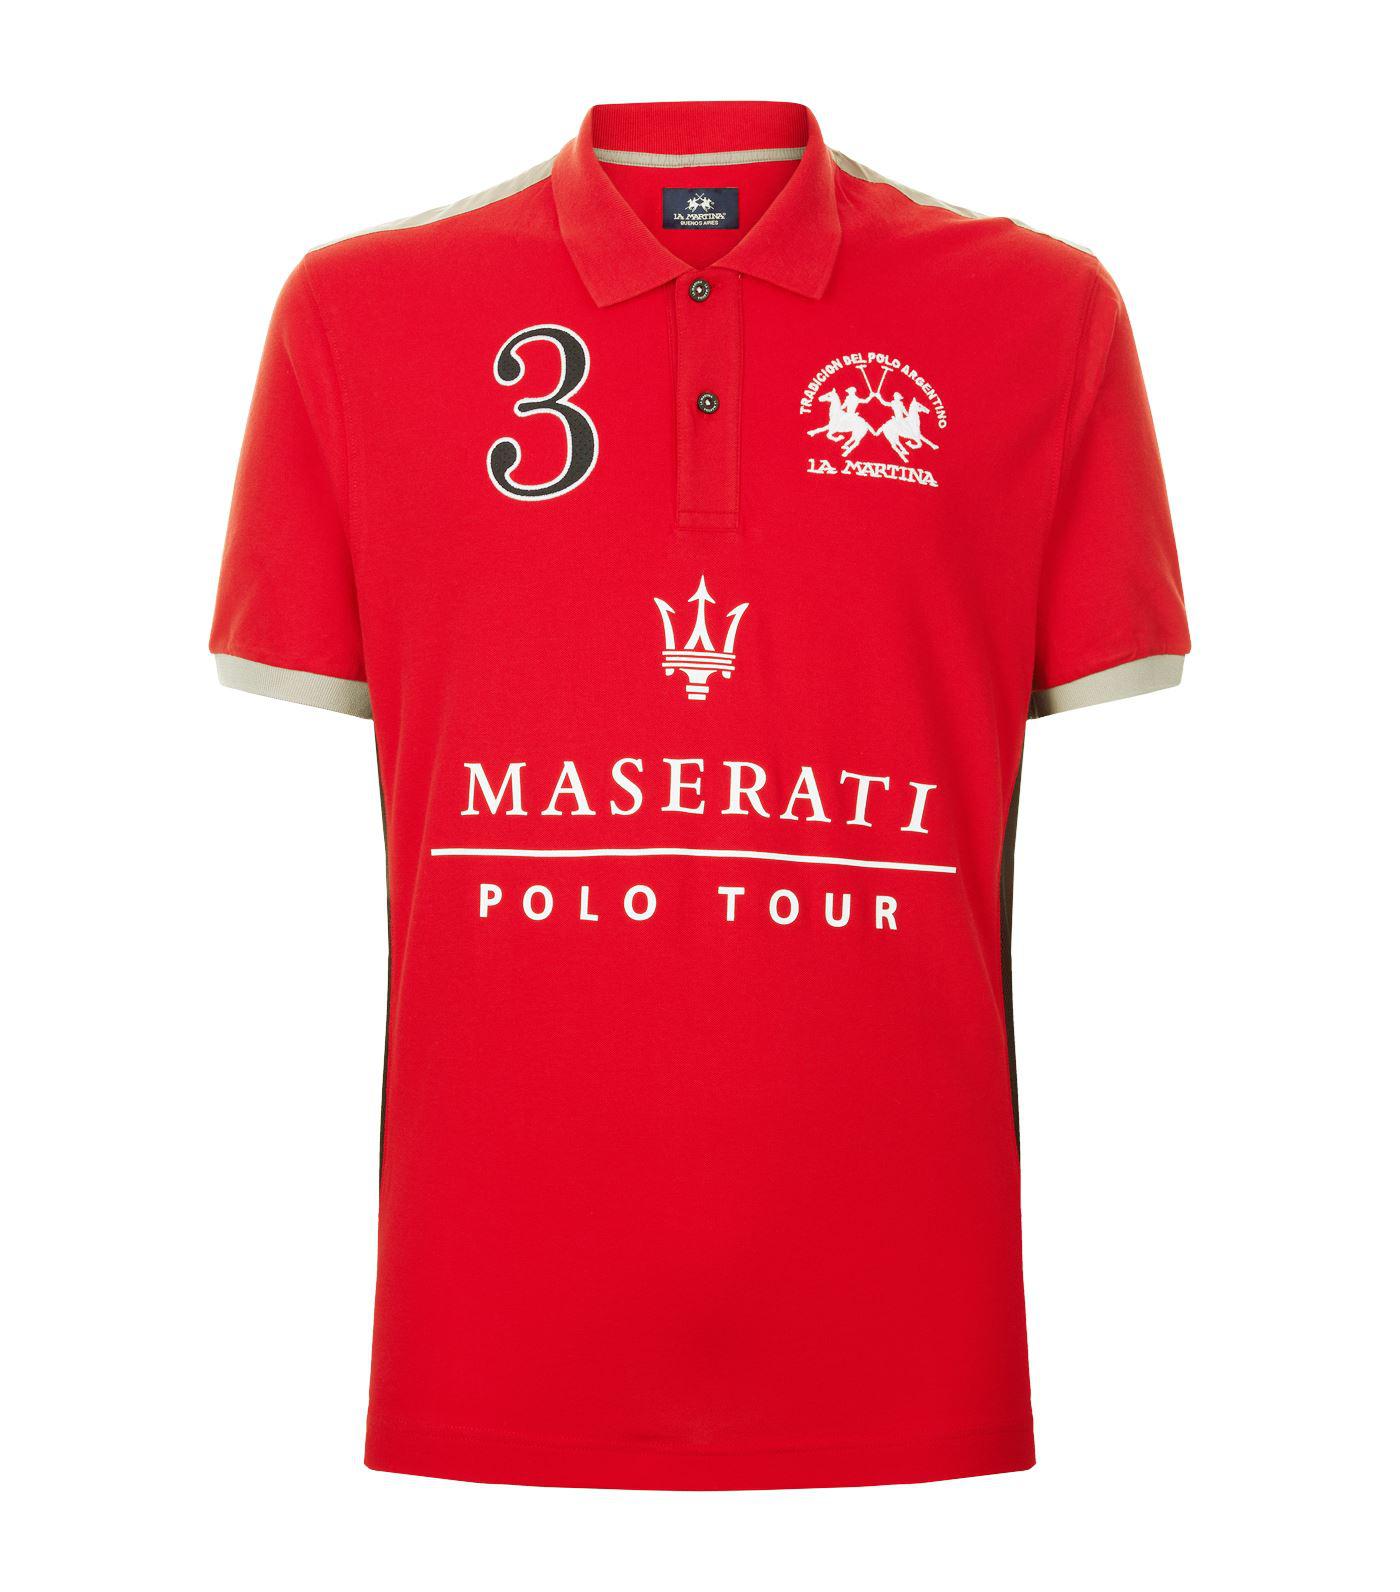 Kleding Herenkleding Overhemden & T-shirts Polos Maserati Logo Car Man's geborduurd poloshirt korte mouw zomerkleding top T-shirt 